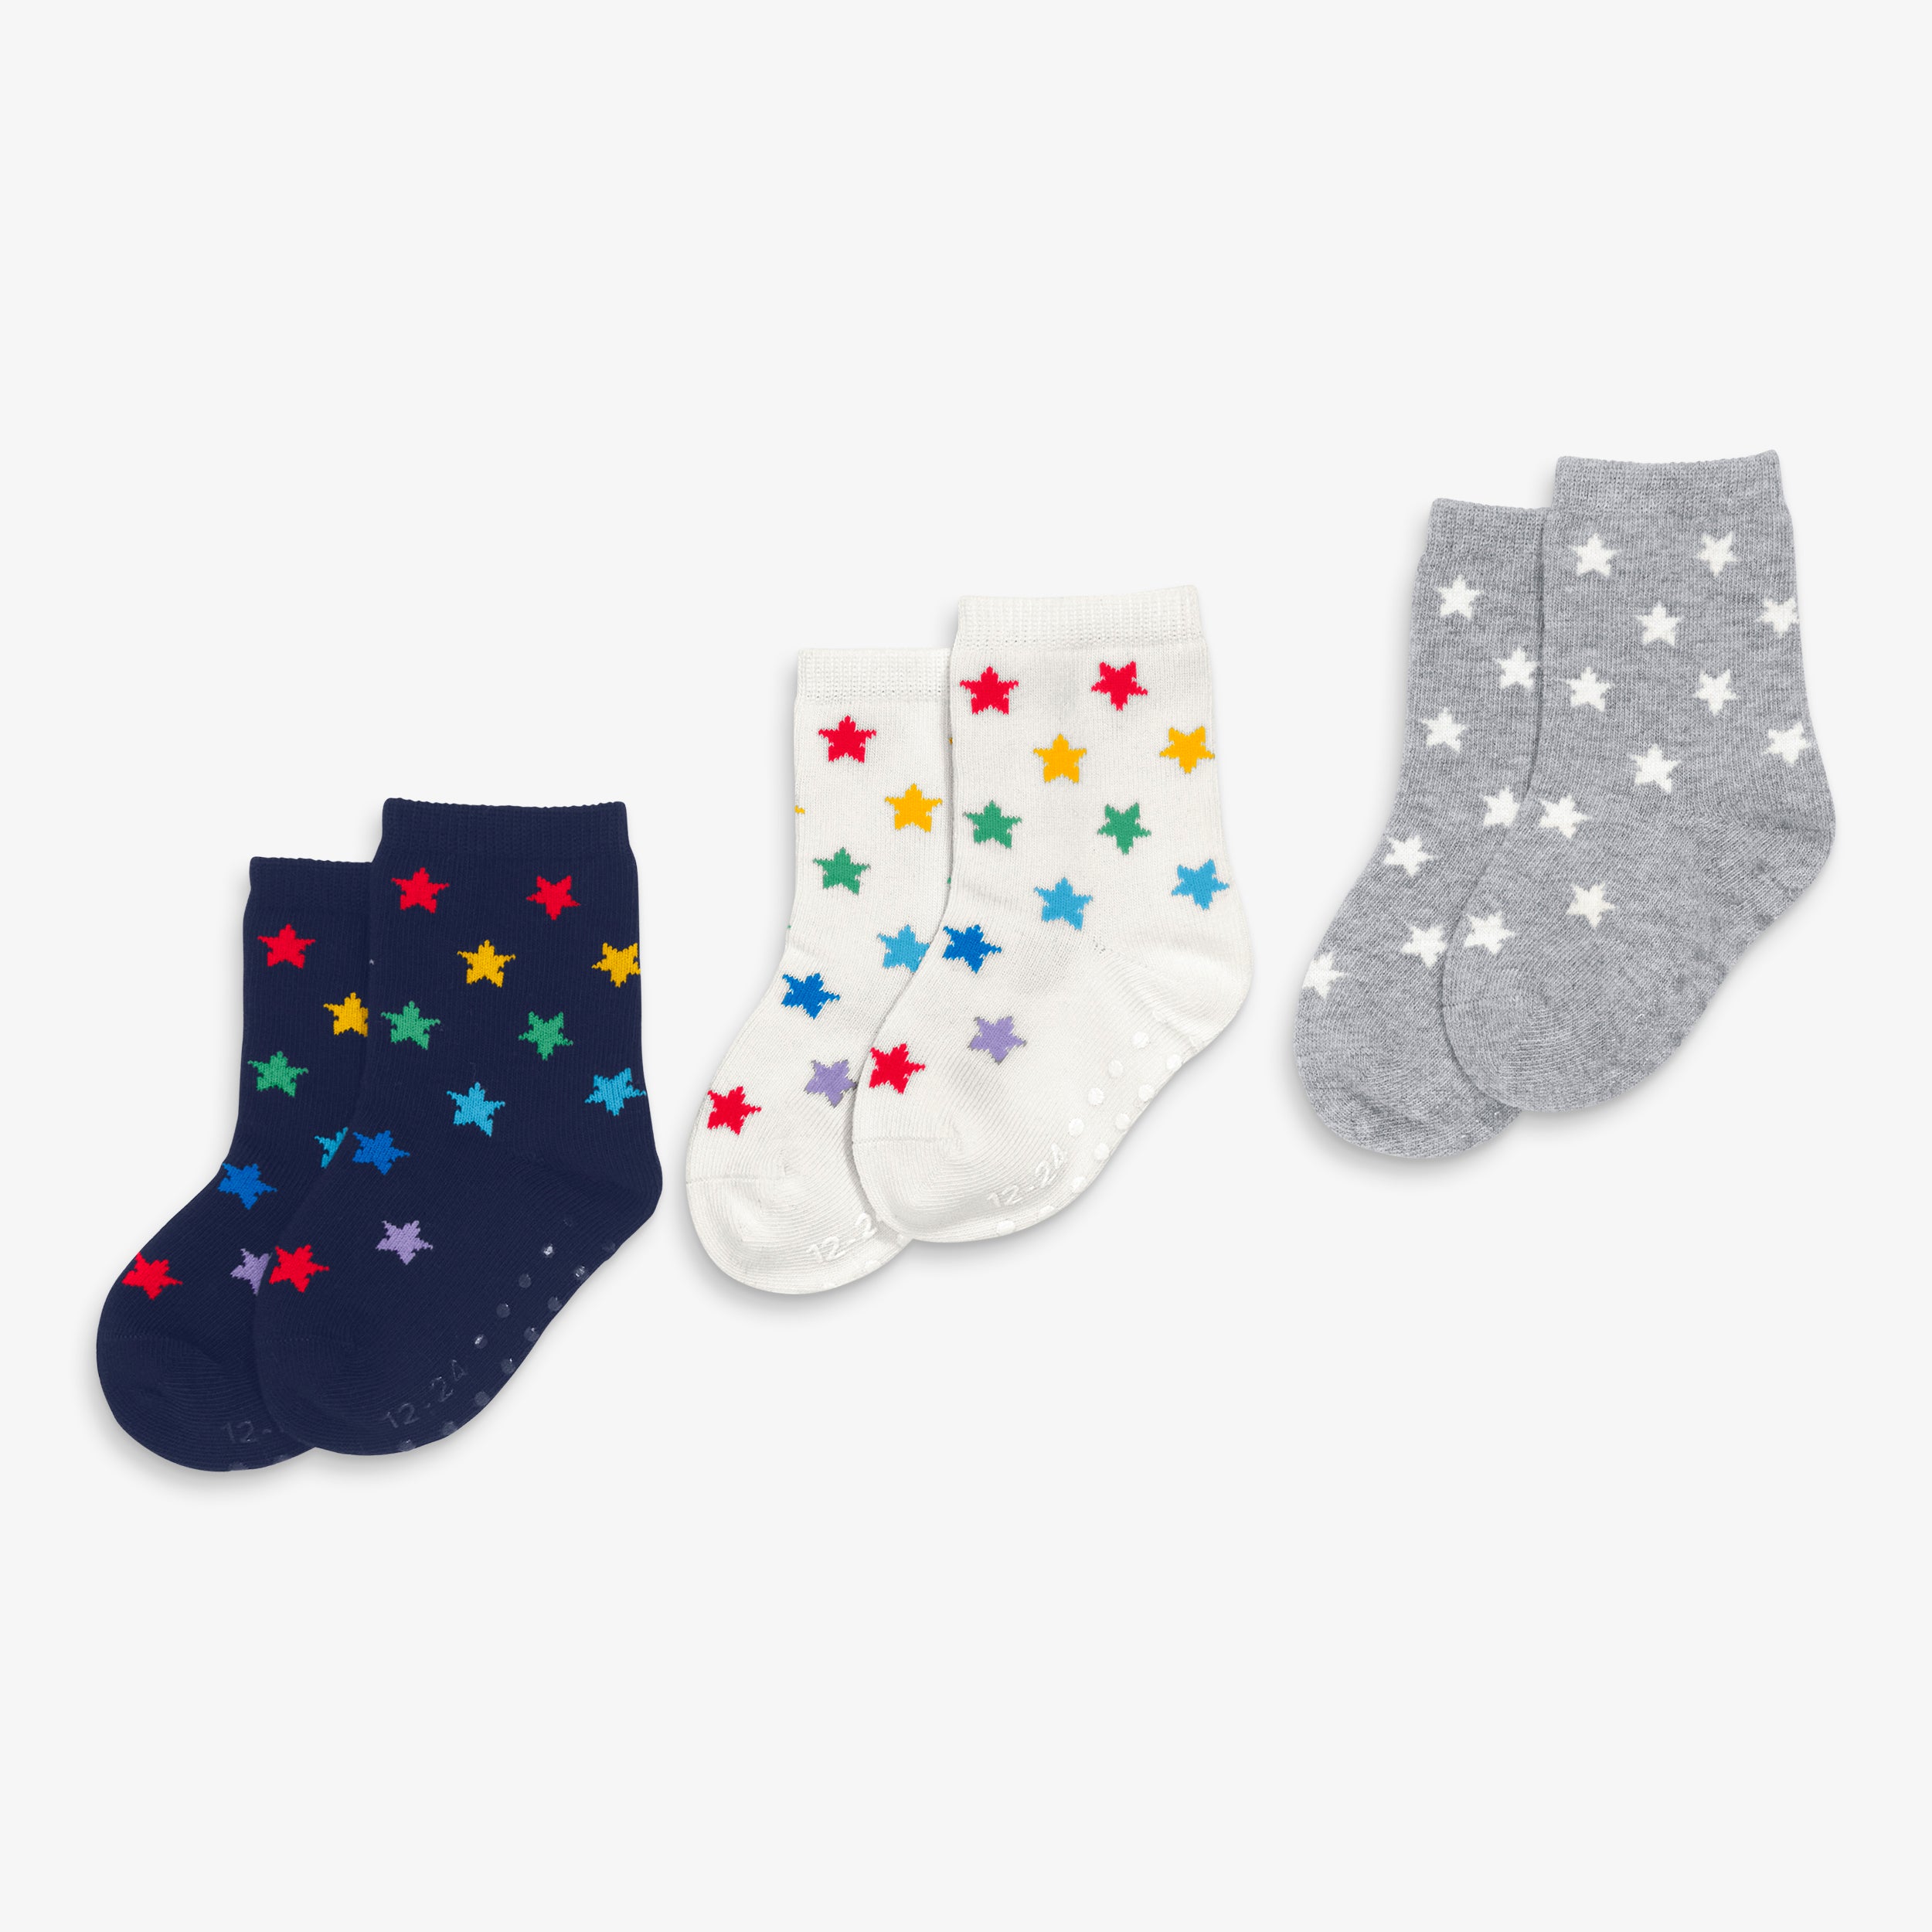 Socks - Rainbow Stripe KIDS